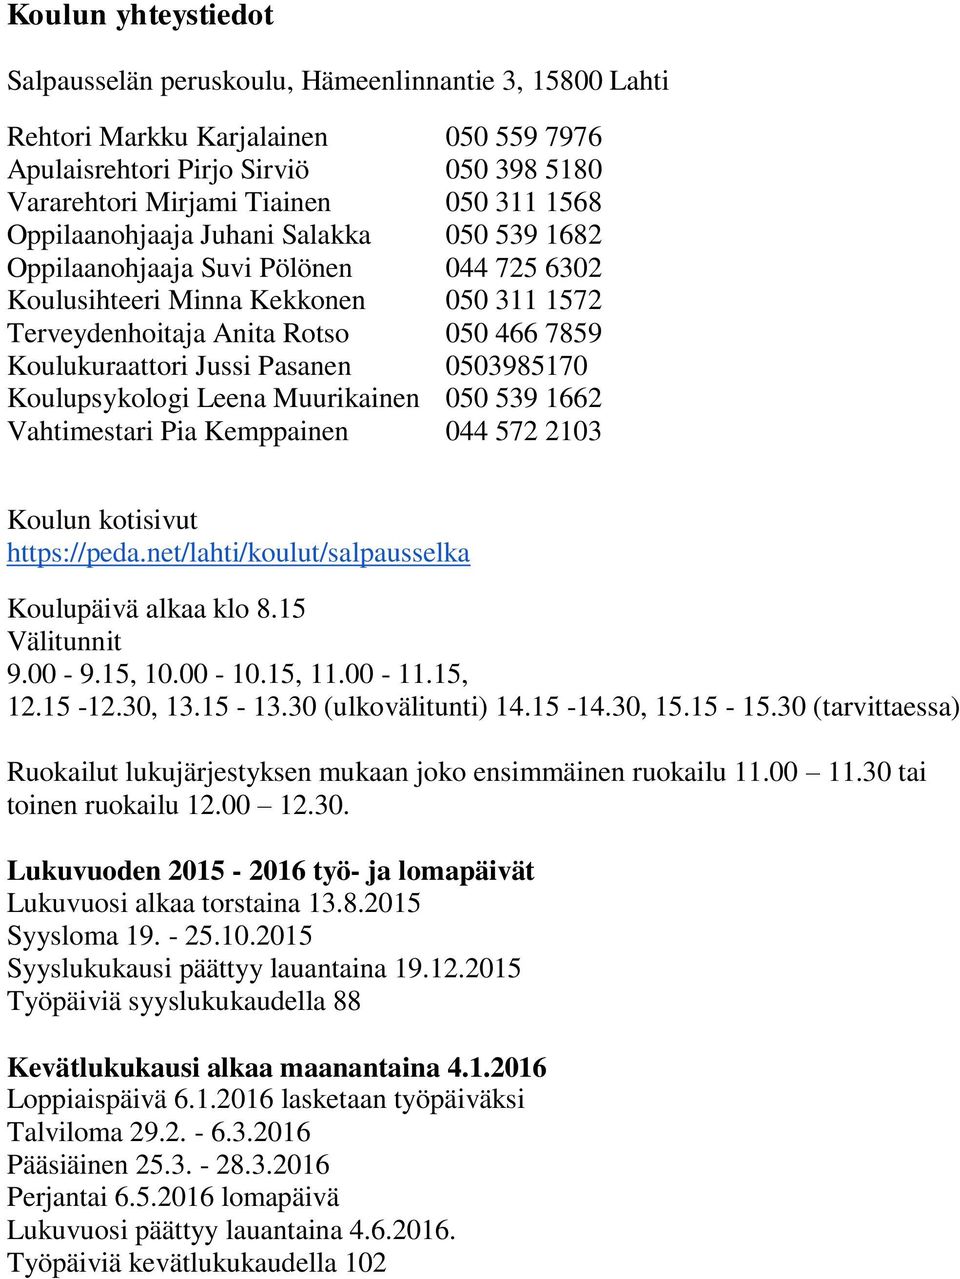 0503985170 Koulupsykologi Leena Muurikainen 050 539 1662 Vahtimestari Pia Kemppainen 044 572 2103 Koulun kotisivut https://peda.net/lahti/koulut/salpausselka Koulupäivä alkaa klo 8.15 Välitunnit 9.